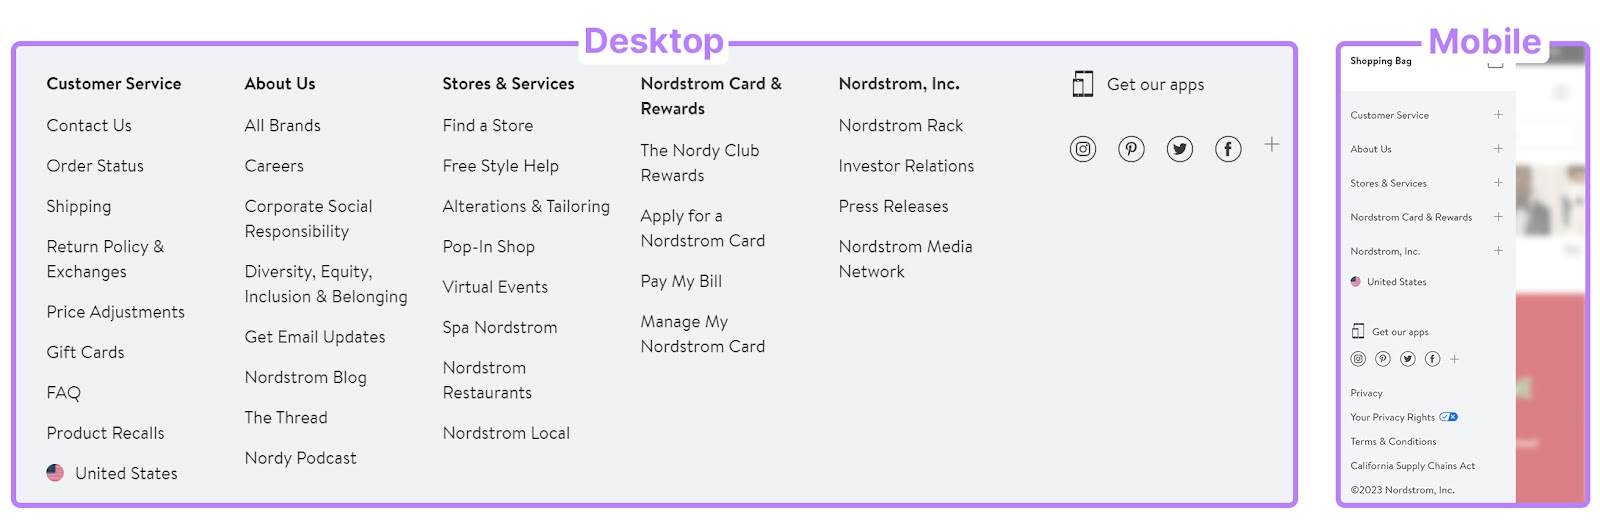 Nordstrom’s desktop menu (left) and mobile menu (right)